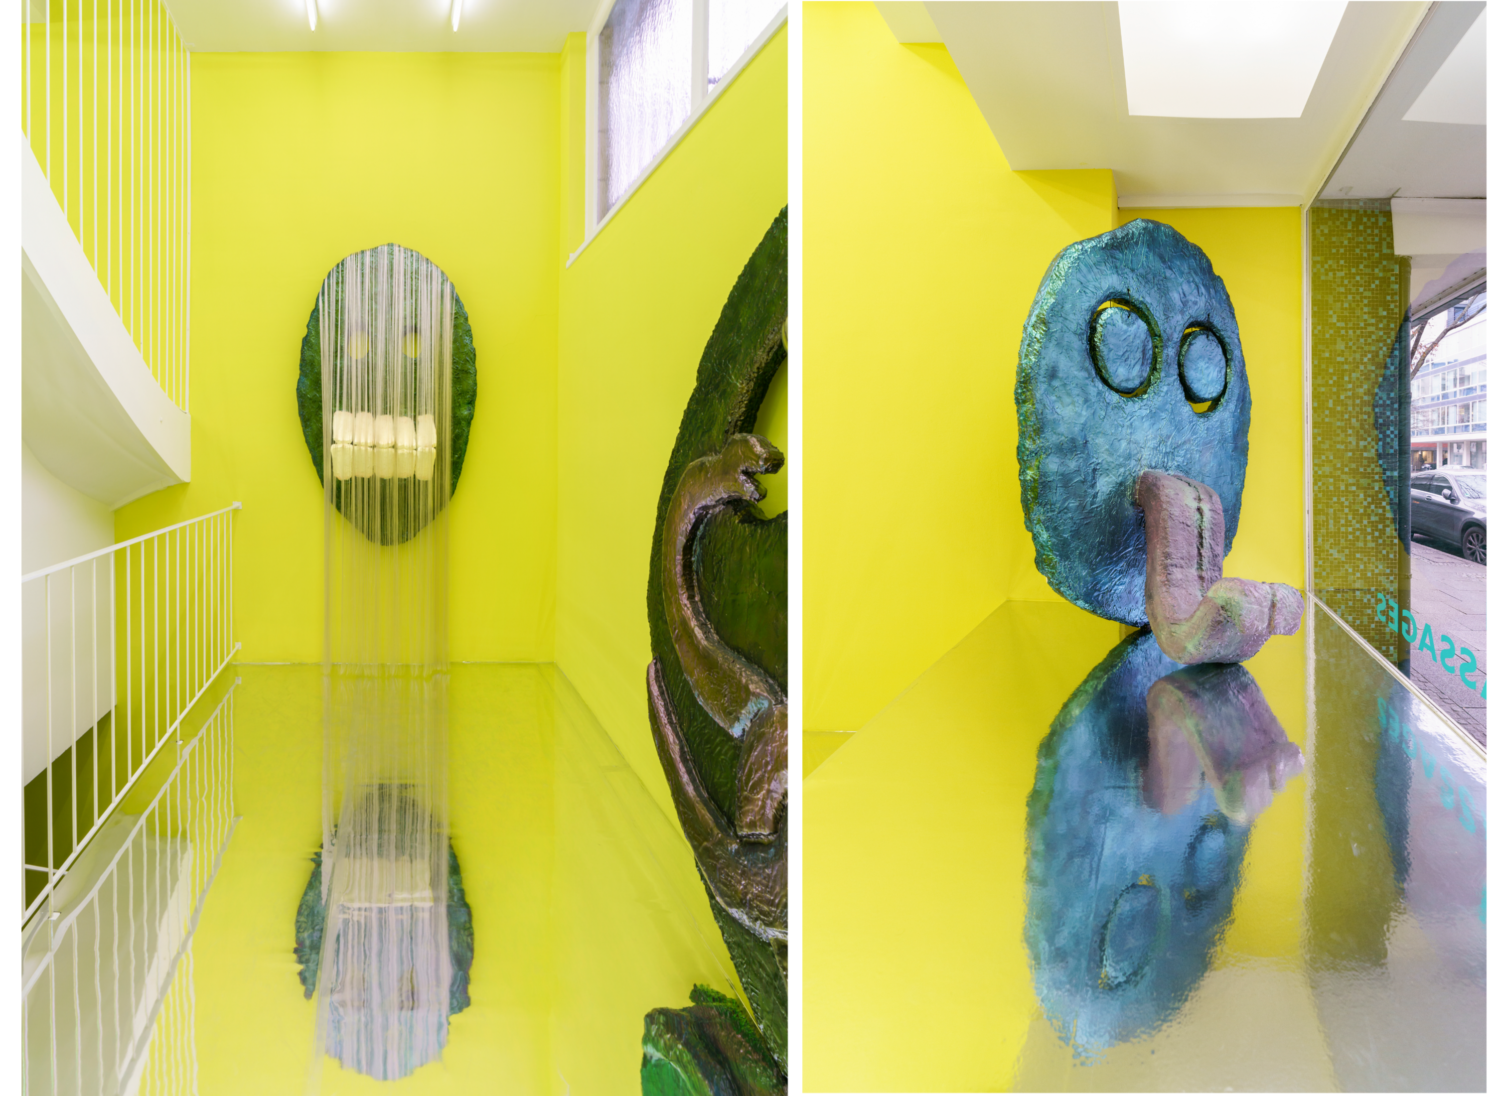 Zwei Bilder von überdimensionalen Gesichtern in einem gelben Ausstellungsraum.